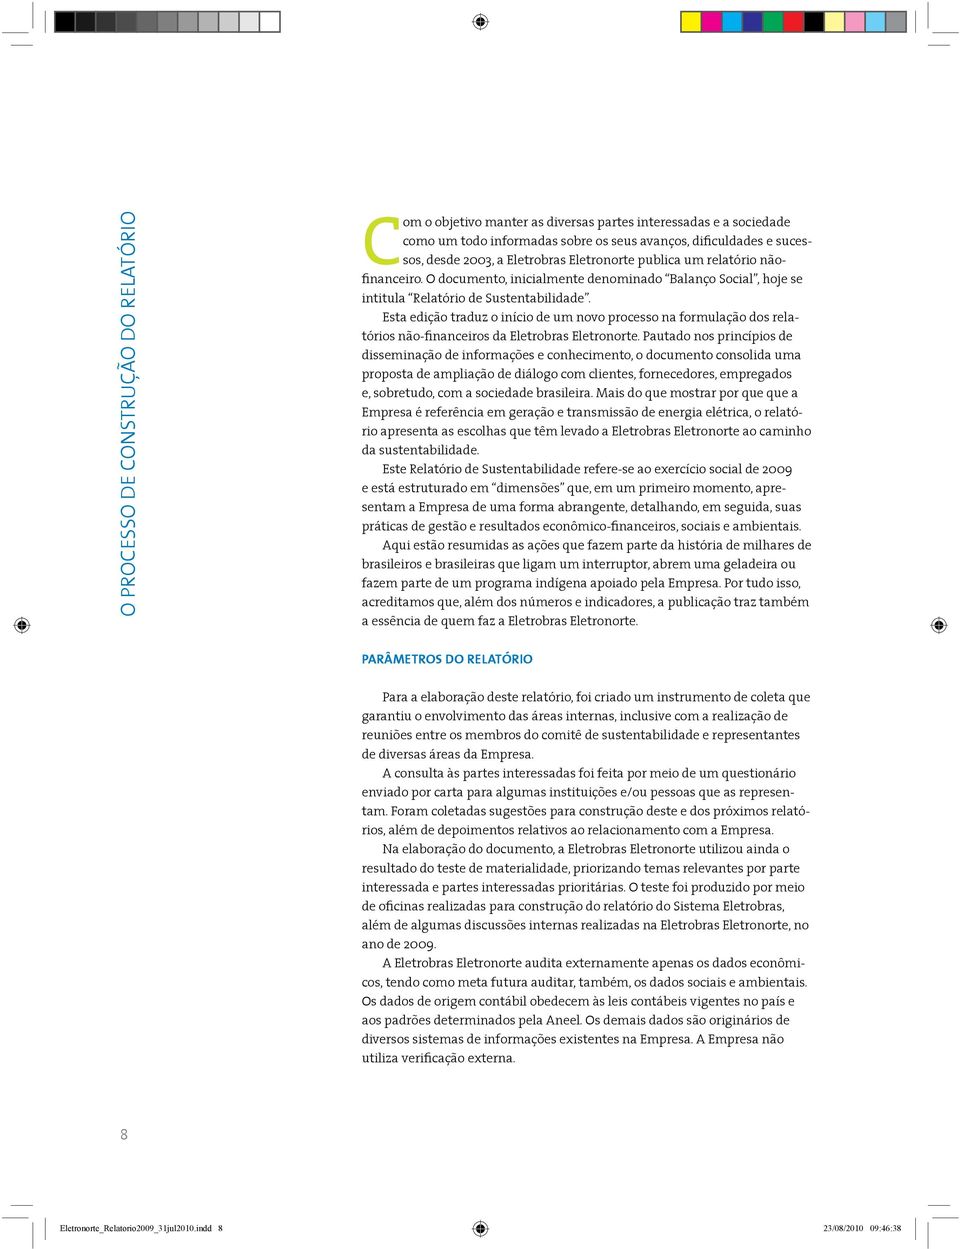 Esta edição traduz o início de um novo processo na formulação dos relatórios não-financeiros da Eletrobras Eletronorte.